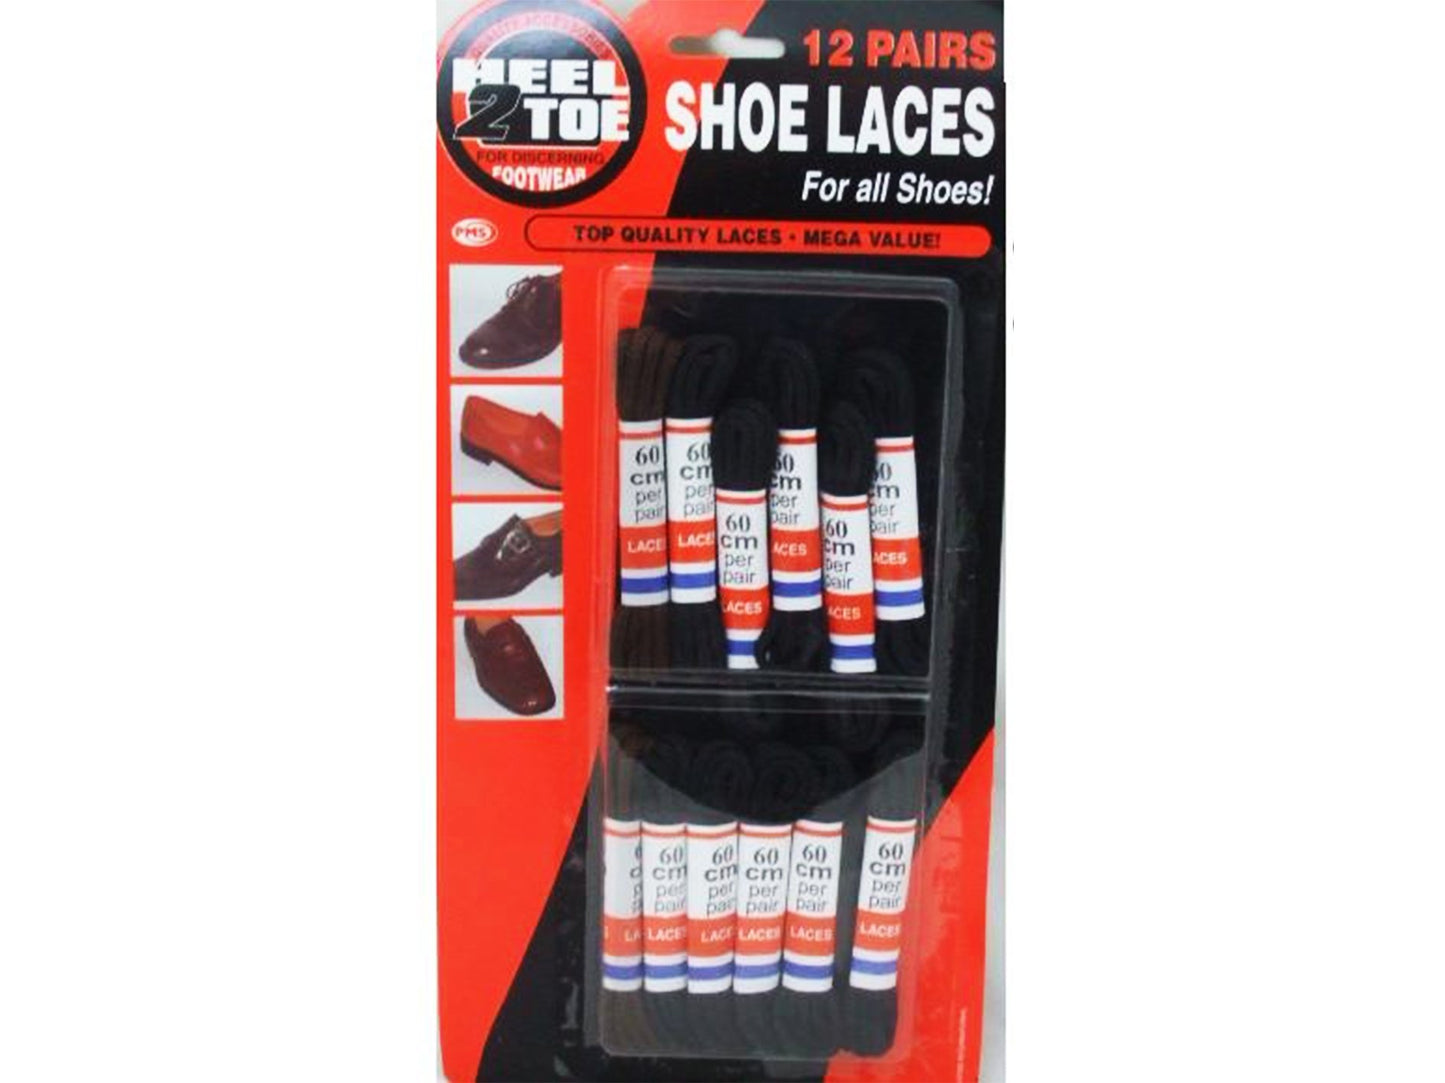 Shoe Laces 12 Pairs - VIR Wholesale